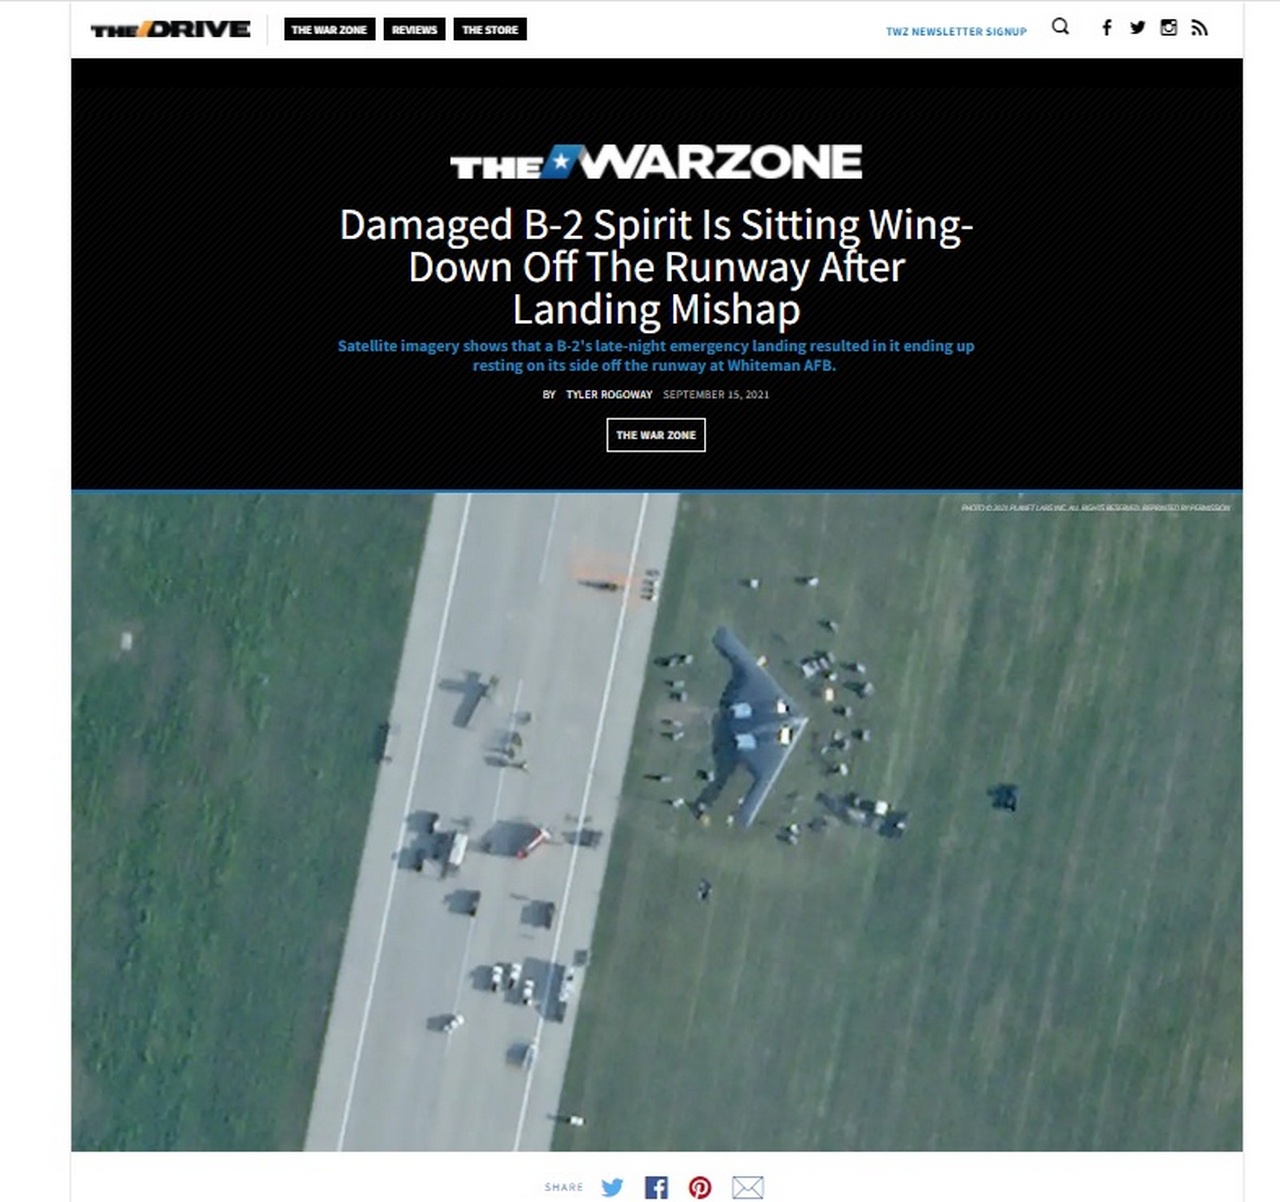 В сентябре 2021 года на базе ВВС Уайтмен тяжёлый стратегический бомбардировщик B-2 Spirit Военно-воздушных сил (ВВС) США совершил аварийную посадку. Спутниковый снимок, полученный от компании Planet Labs, опубликовало издание The Drive.